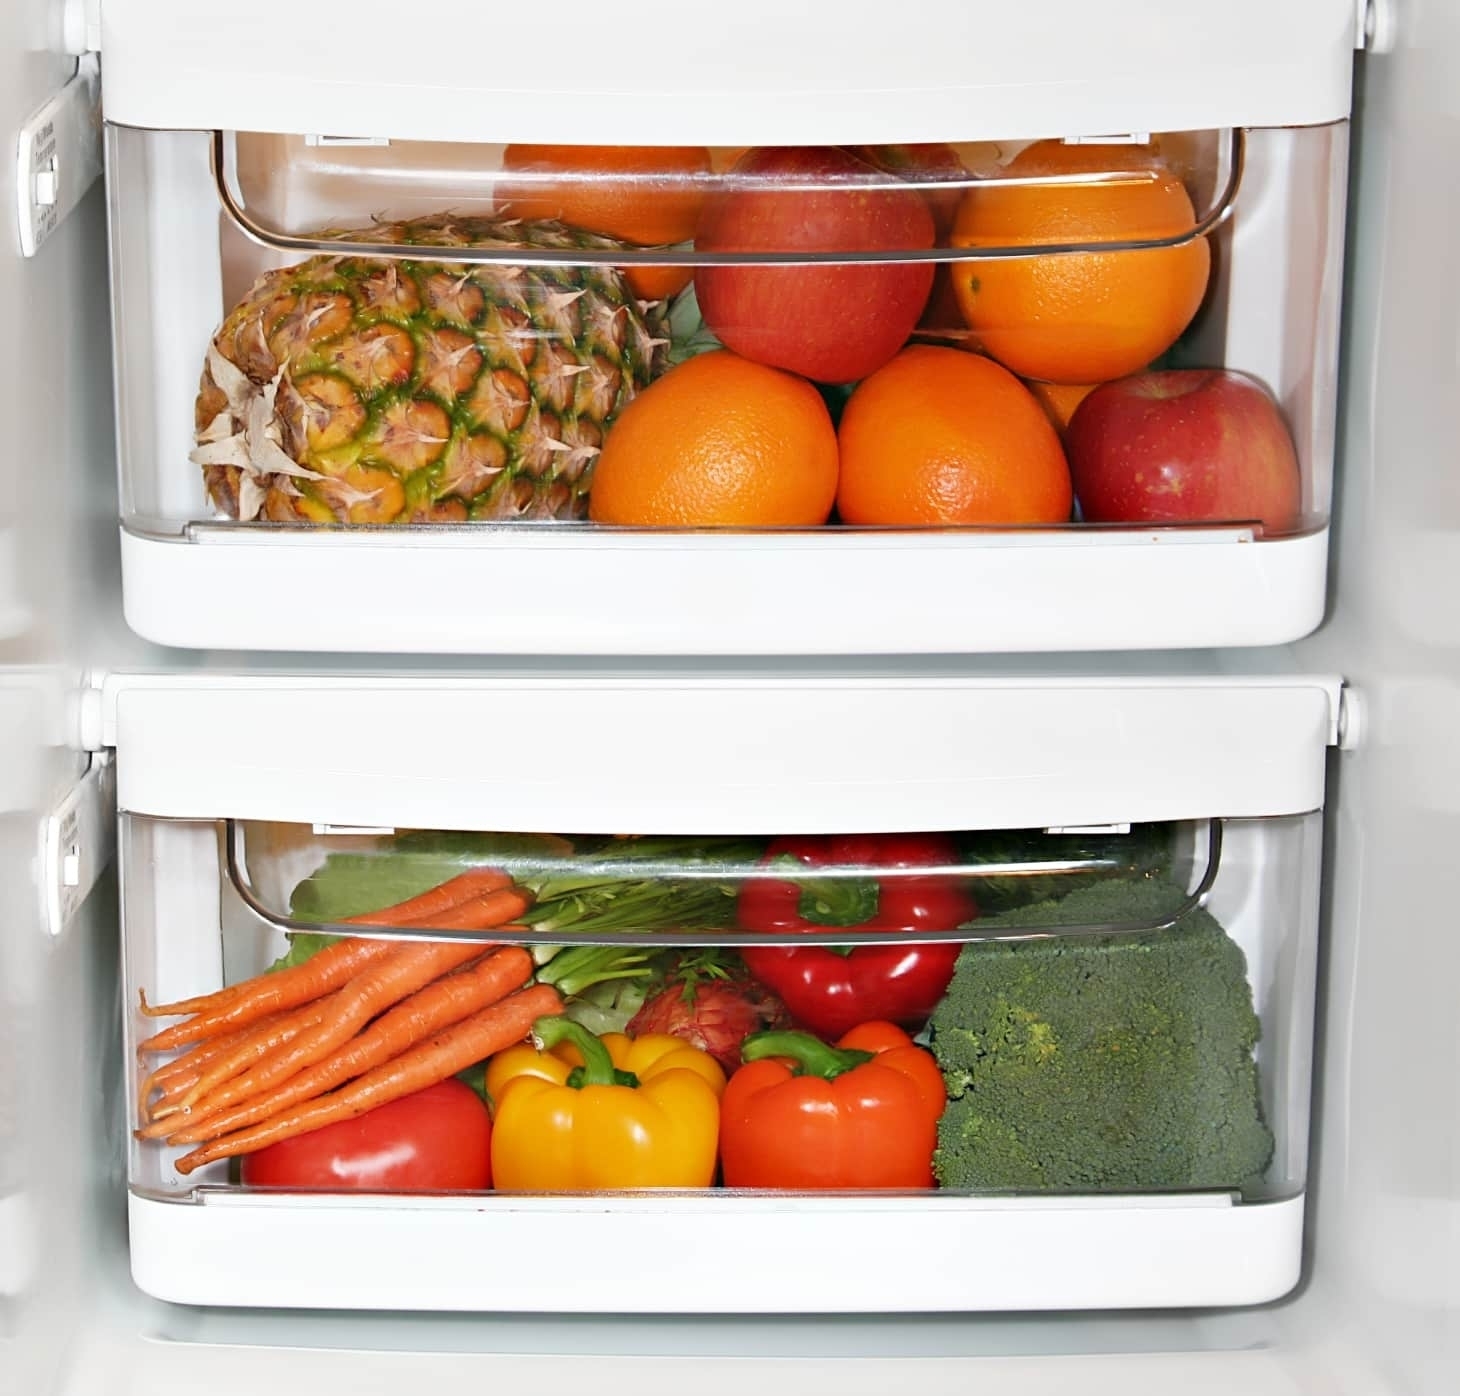 Эксперты выяснили, где заводится 80% бактерий в каждом холодильнике